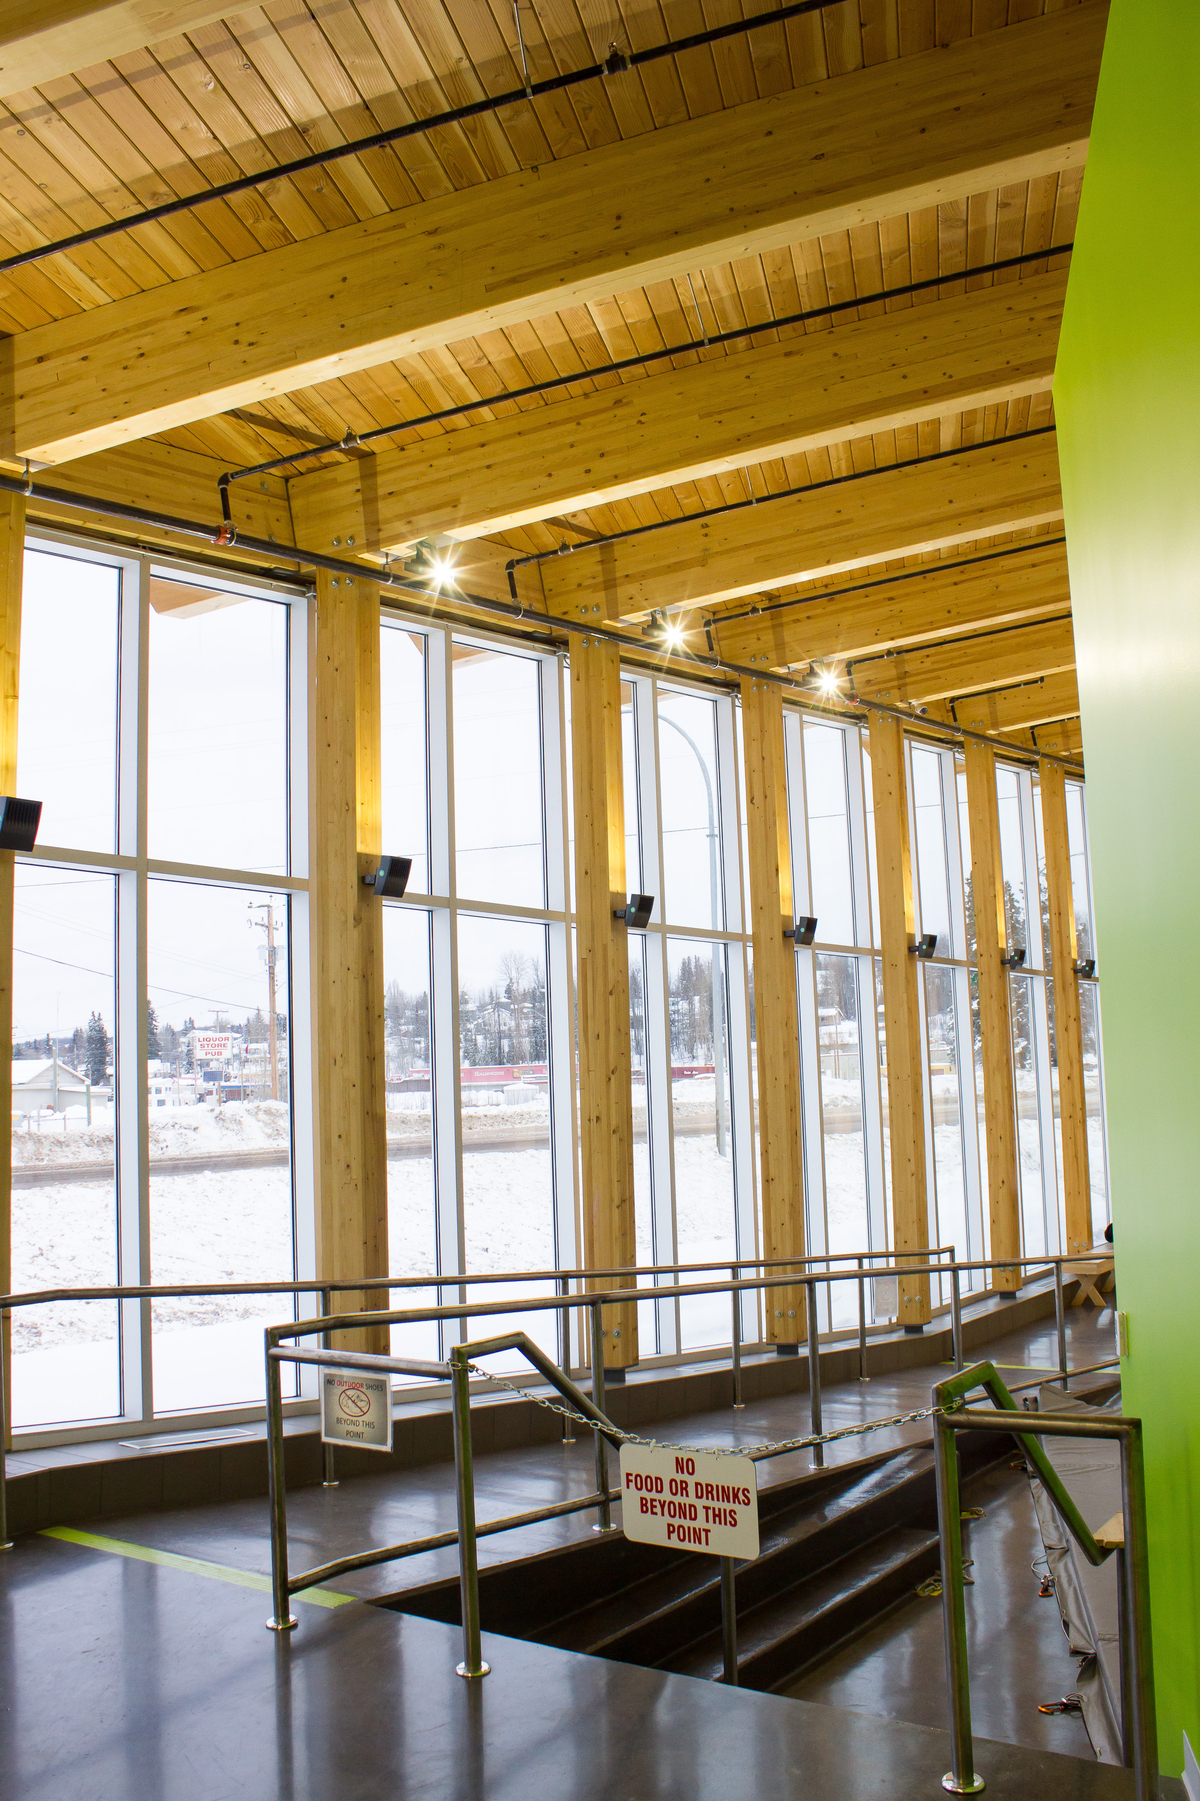 伯恩斯湖湖滨综合公寓的阳光室内冬季图像，显示实心木板甲板和胶合木梁和支撑柱裸露的屋顶结构